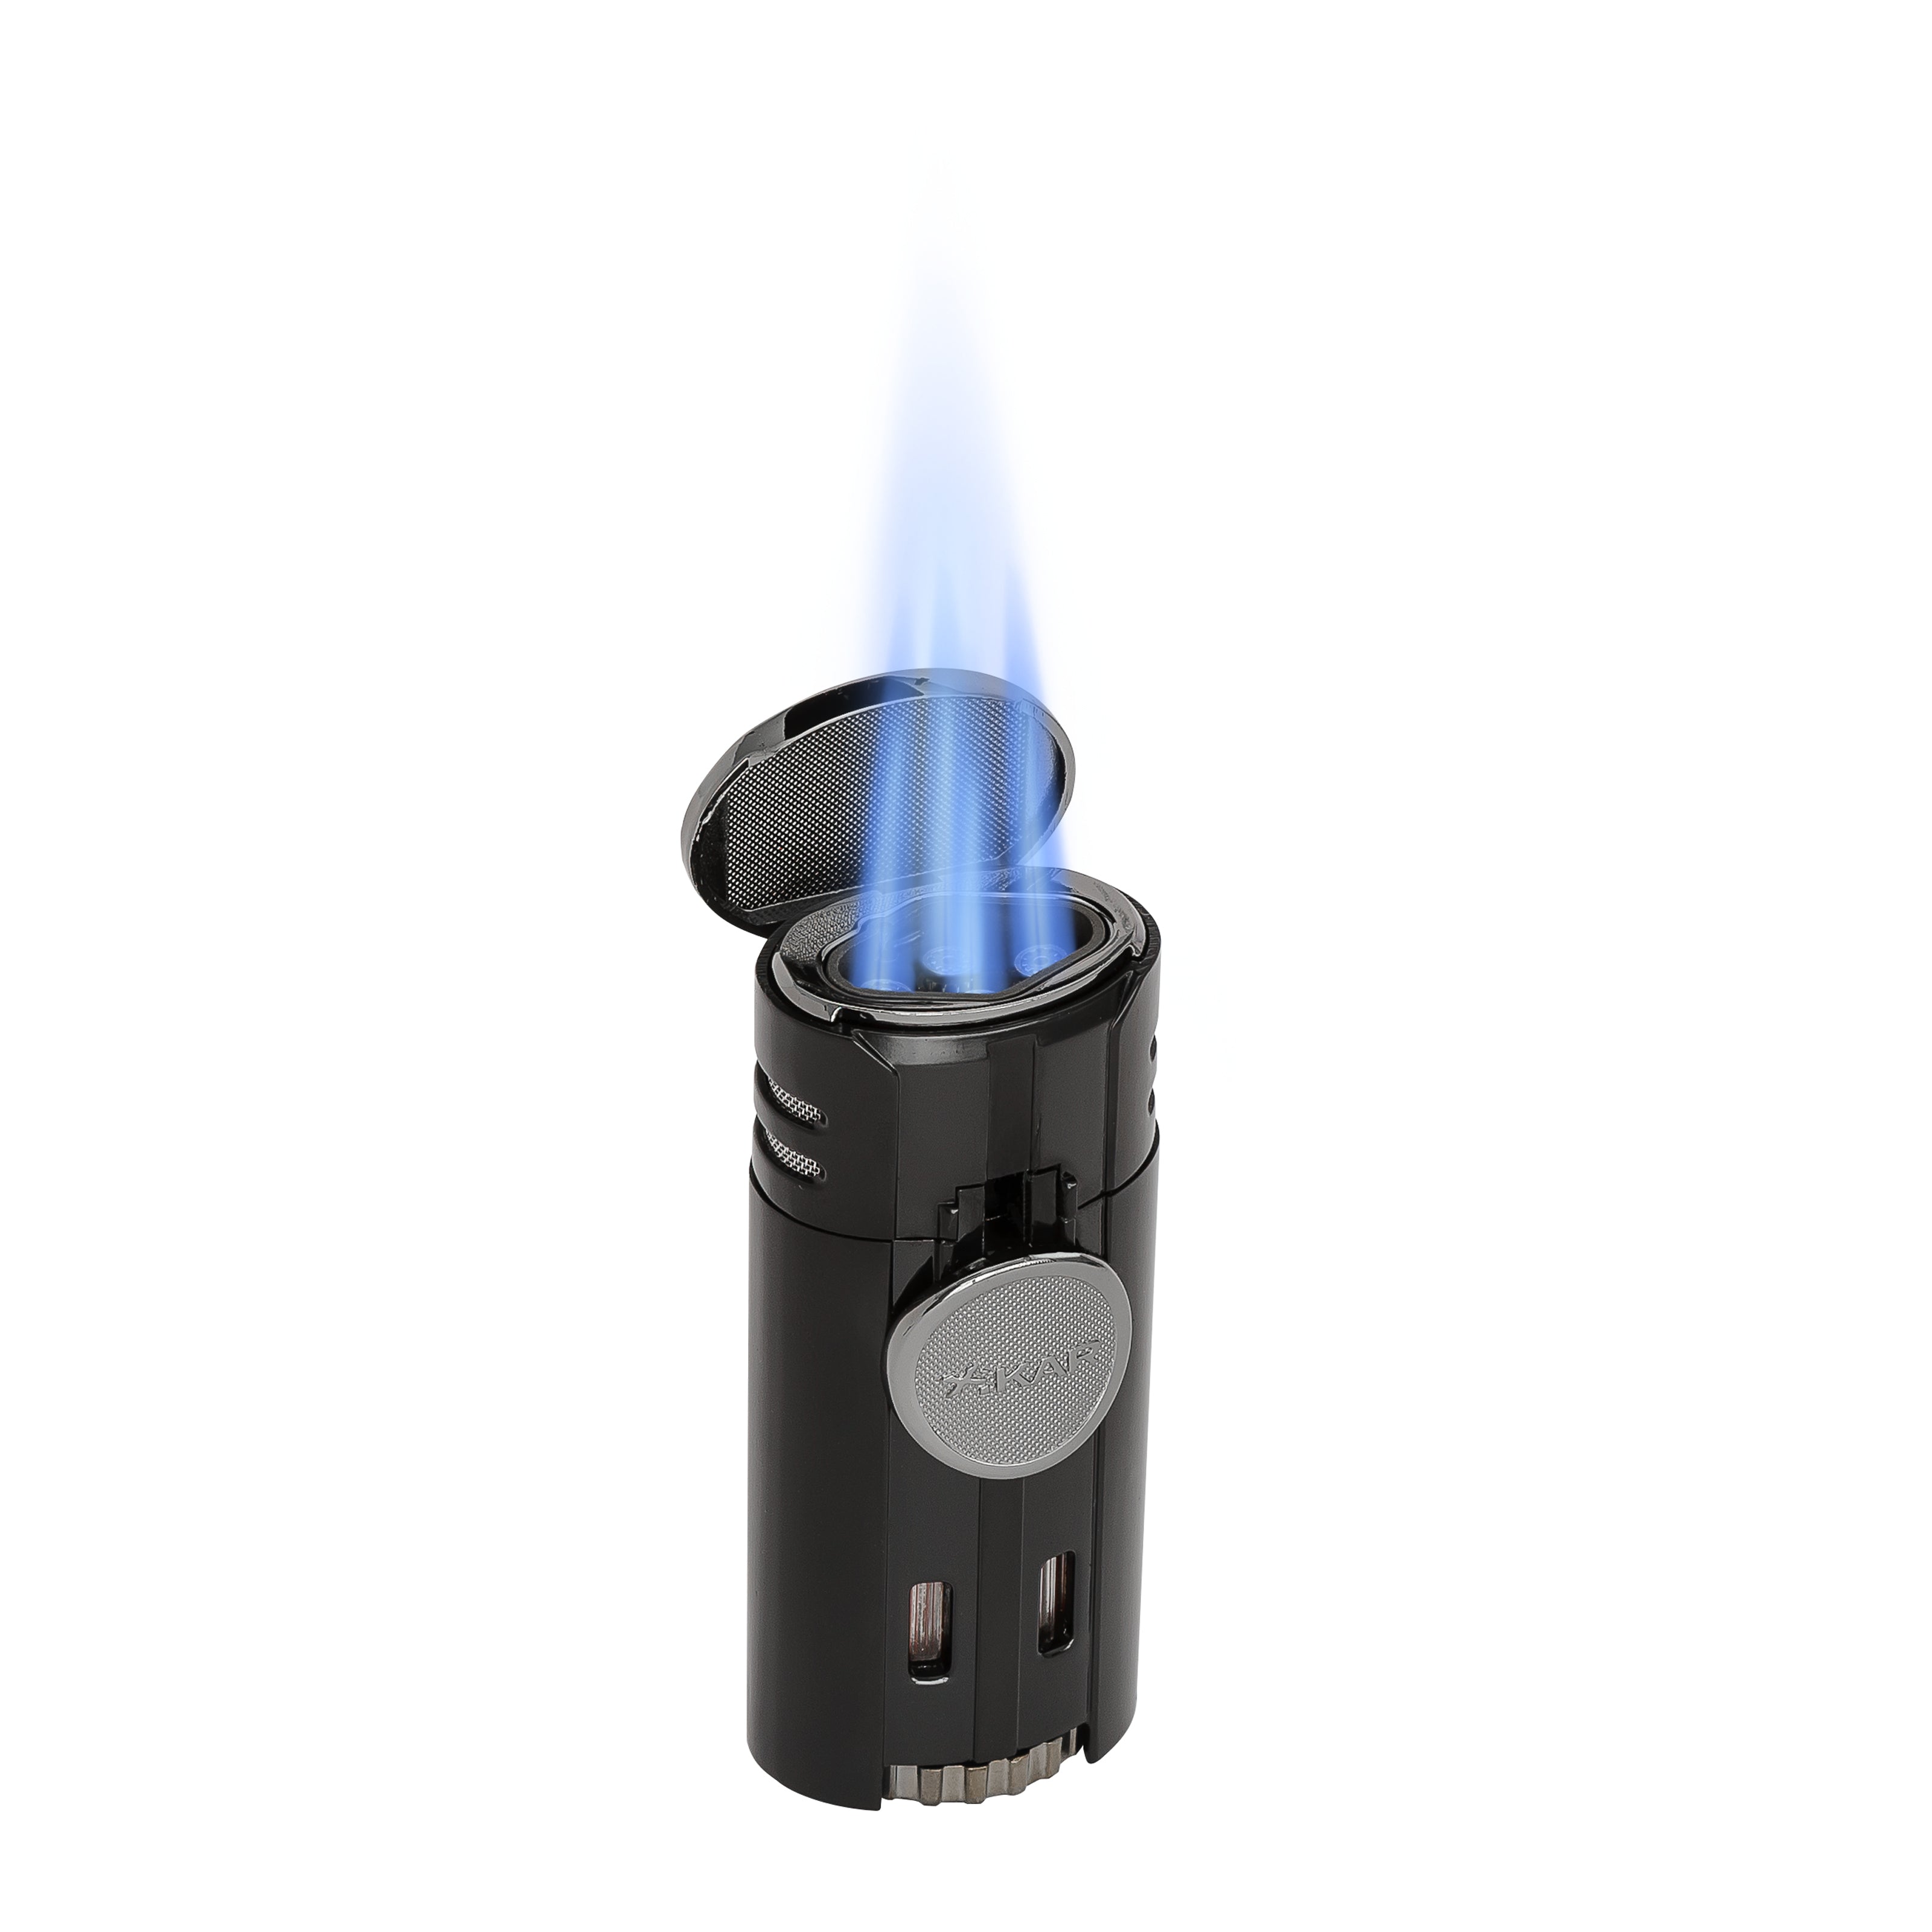 XIKAR® HP4 Quad-jet Torch Lighter